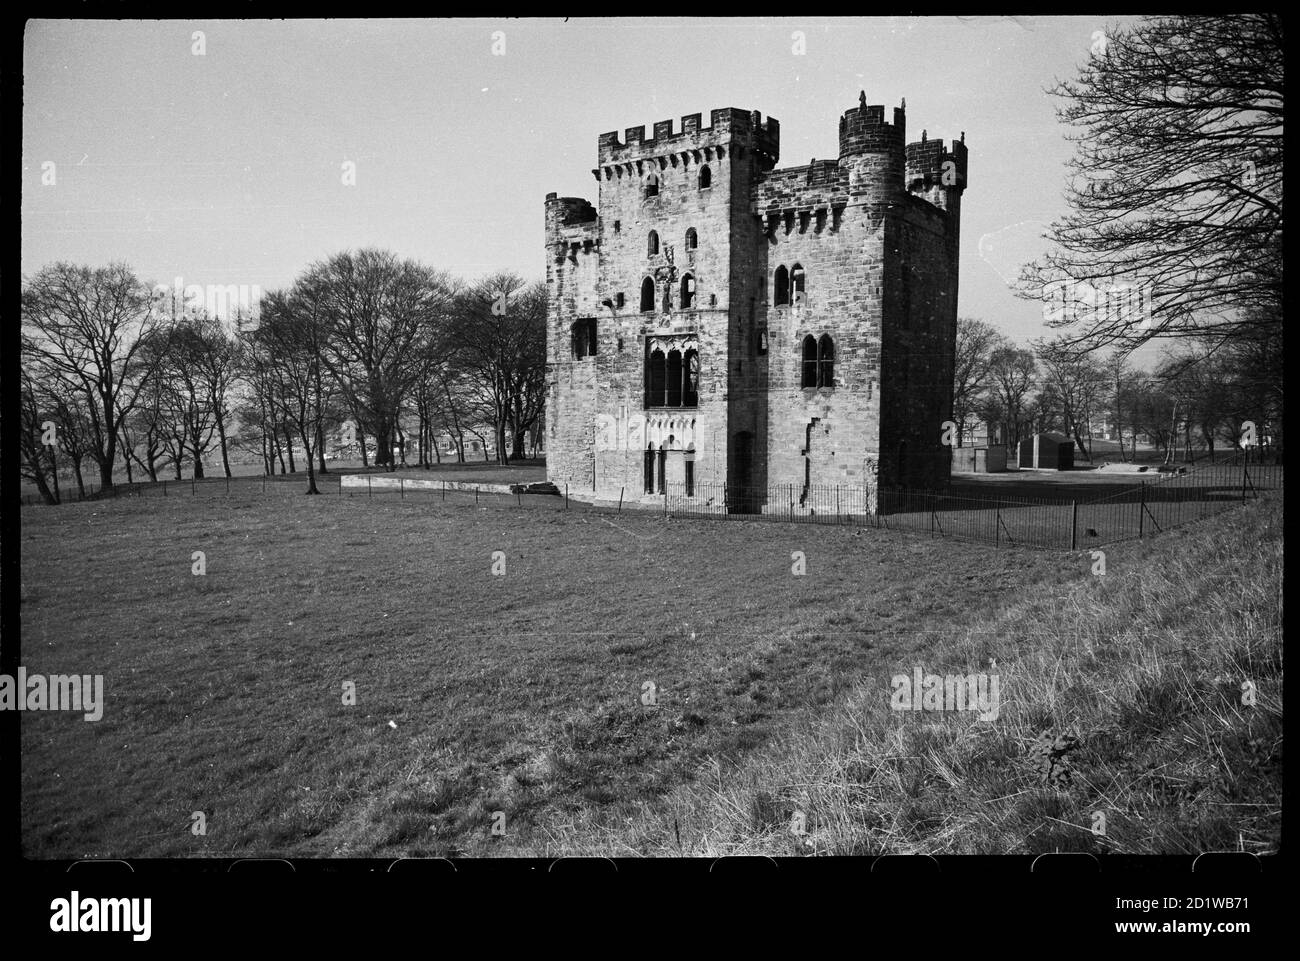 Castillo de Hylton, Sunderland. Una vista exterior del Castillo de Hylton, visto desde el noreste y mostrando la elevación este de la torre fortificada-casa. Foto de stock